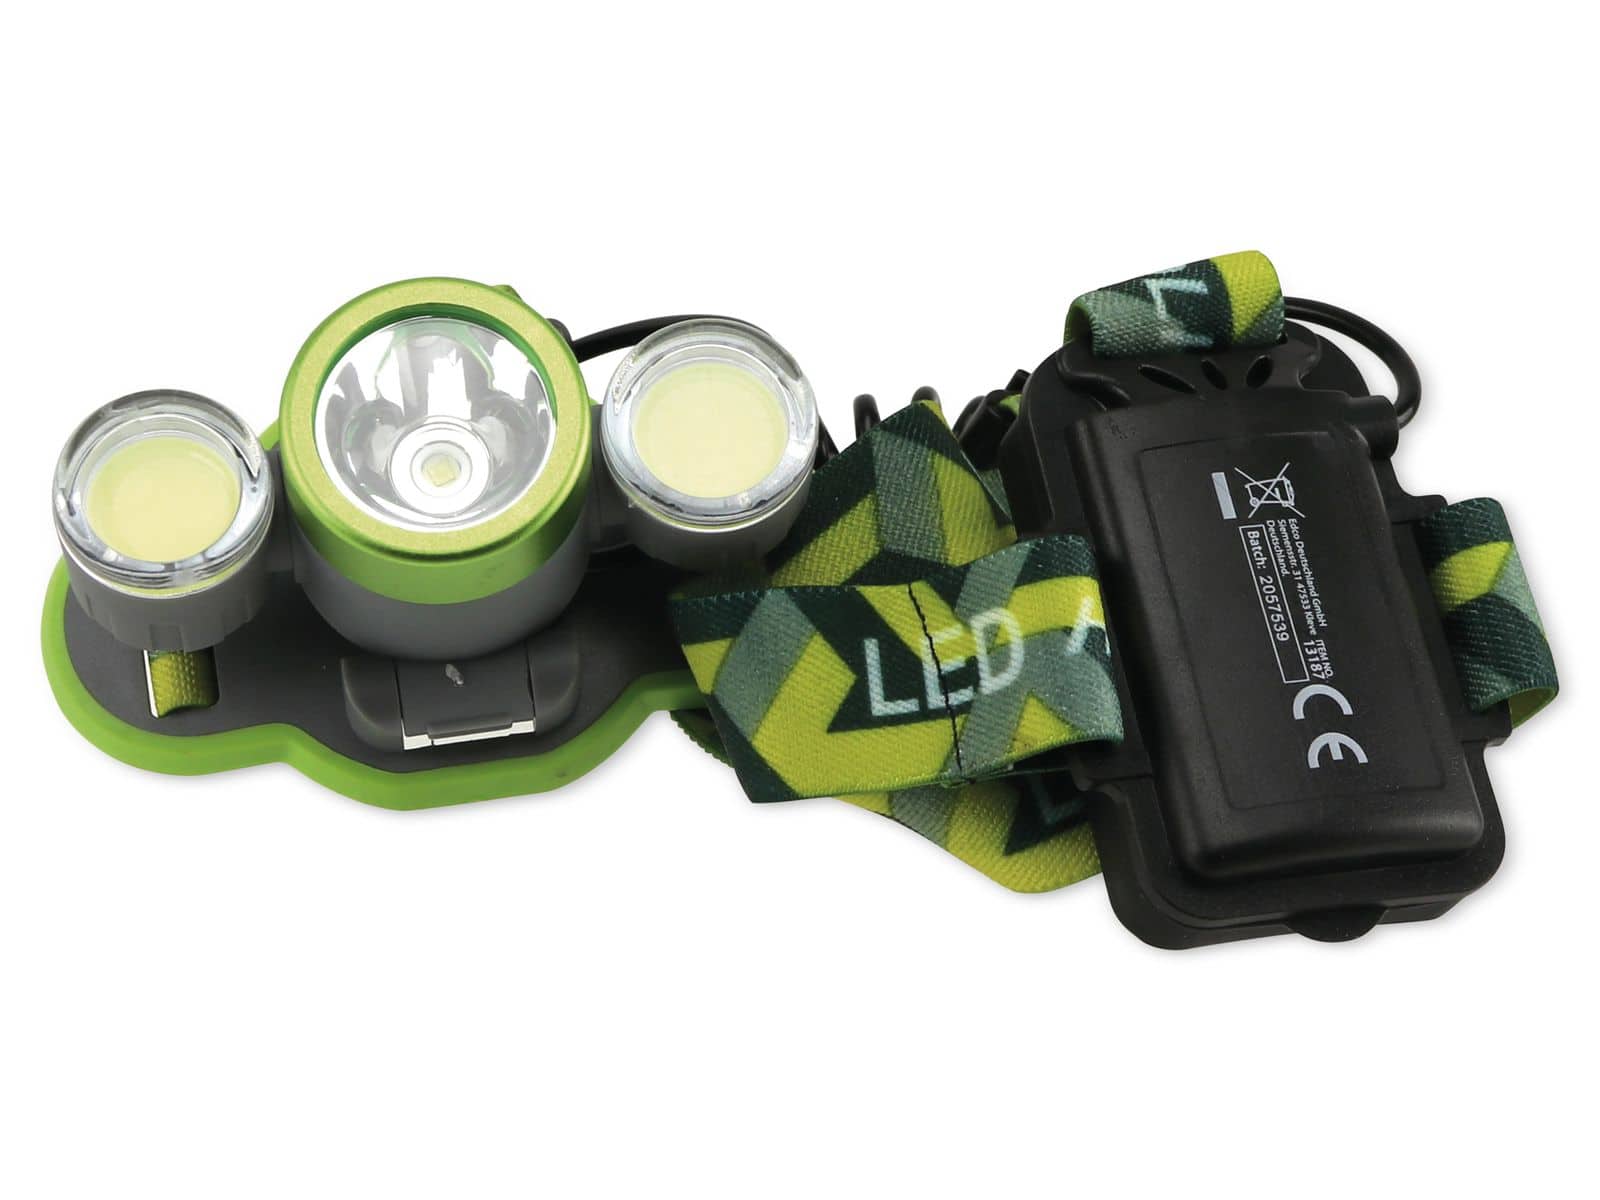 GRUNDIG LED-Stirnlampe 1 LED, 2x COB, 4 Funktionen, grün von Grundig